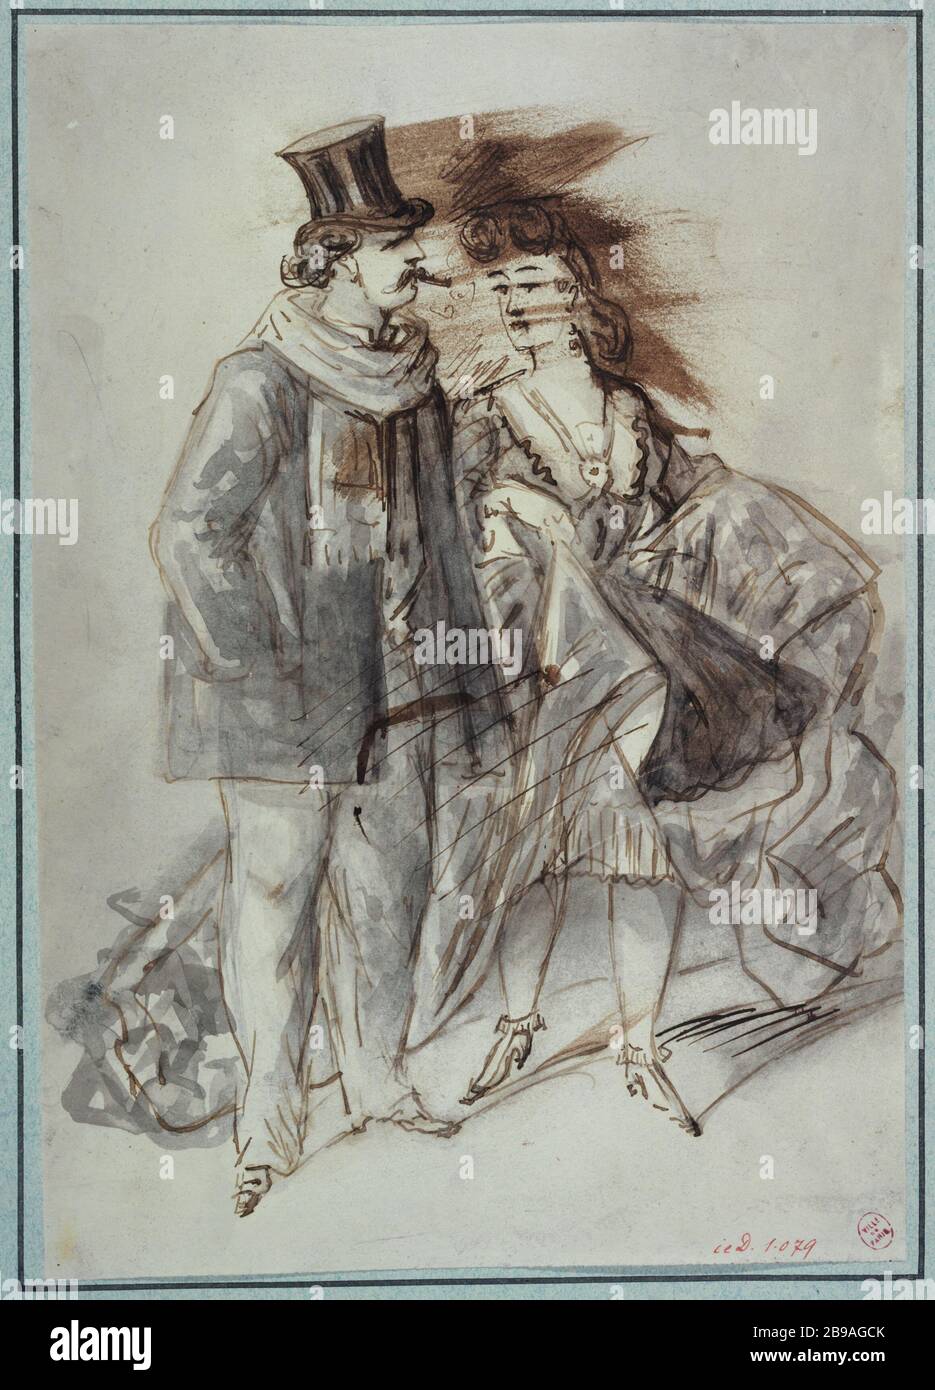 A woman accosting a passing Constantin Ernest Adolphe Hyacinthe Guys (1802-1892), dessinateur et peintre français. Une femme accostant un passant. Plume, encre brune, lavis gris. Paris, musée Carnavalet. Stock Photo